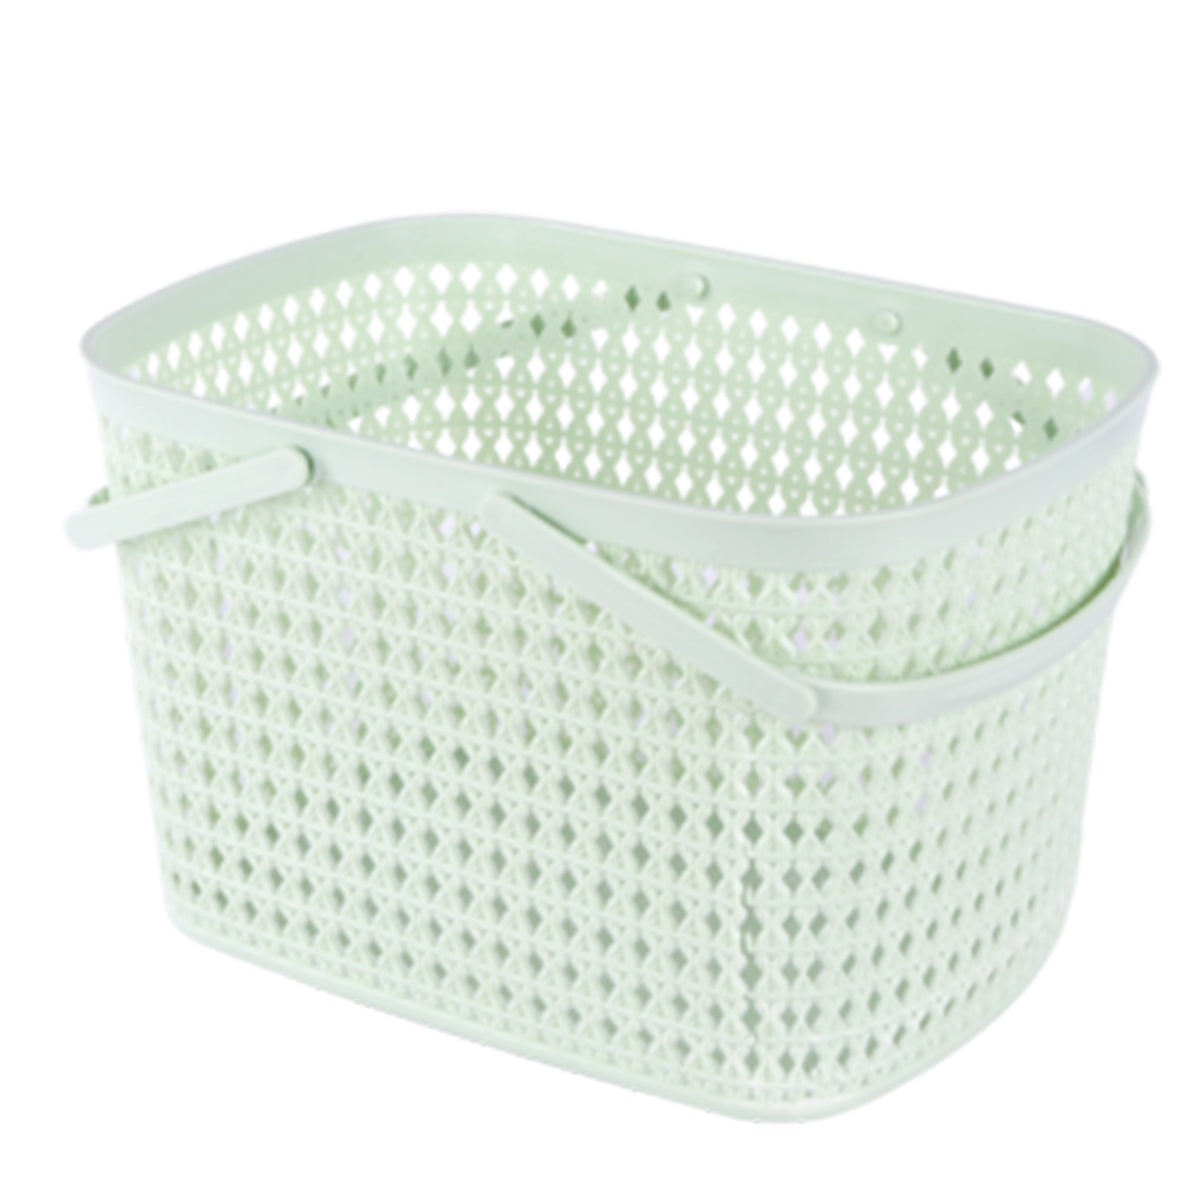 Storage basket - Green